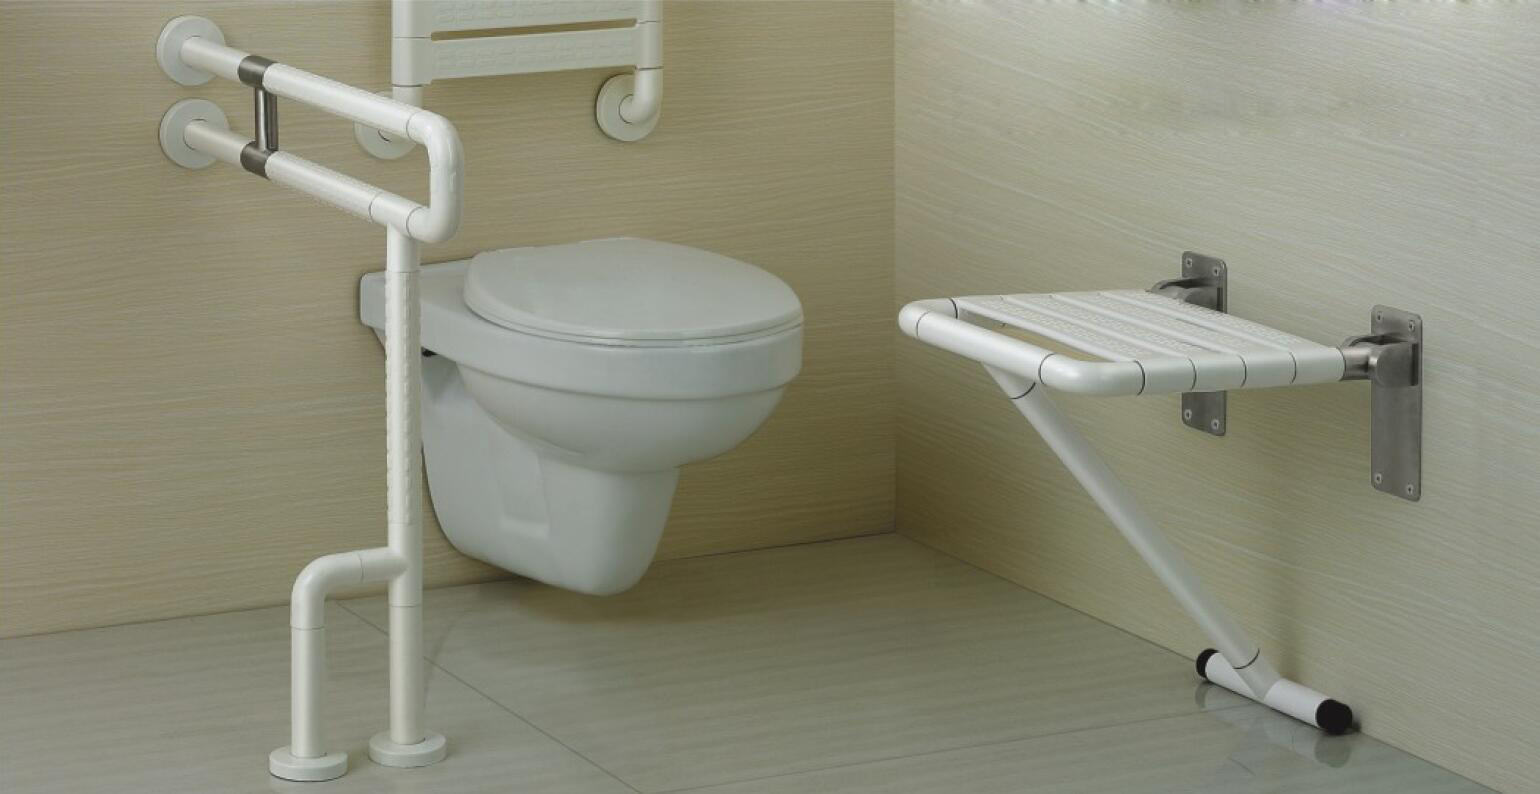 Hva er årsakene til populariteten til vegghengte toaletter?